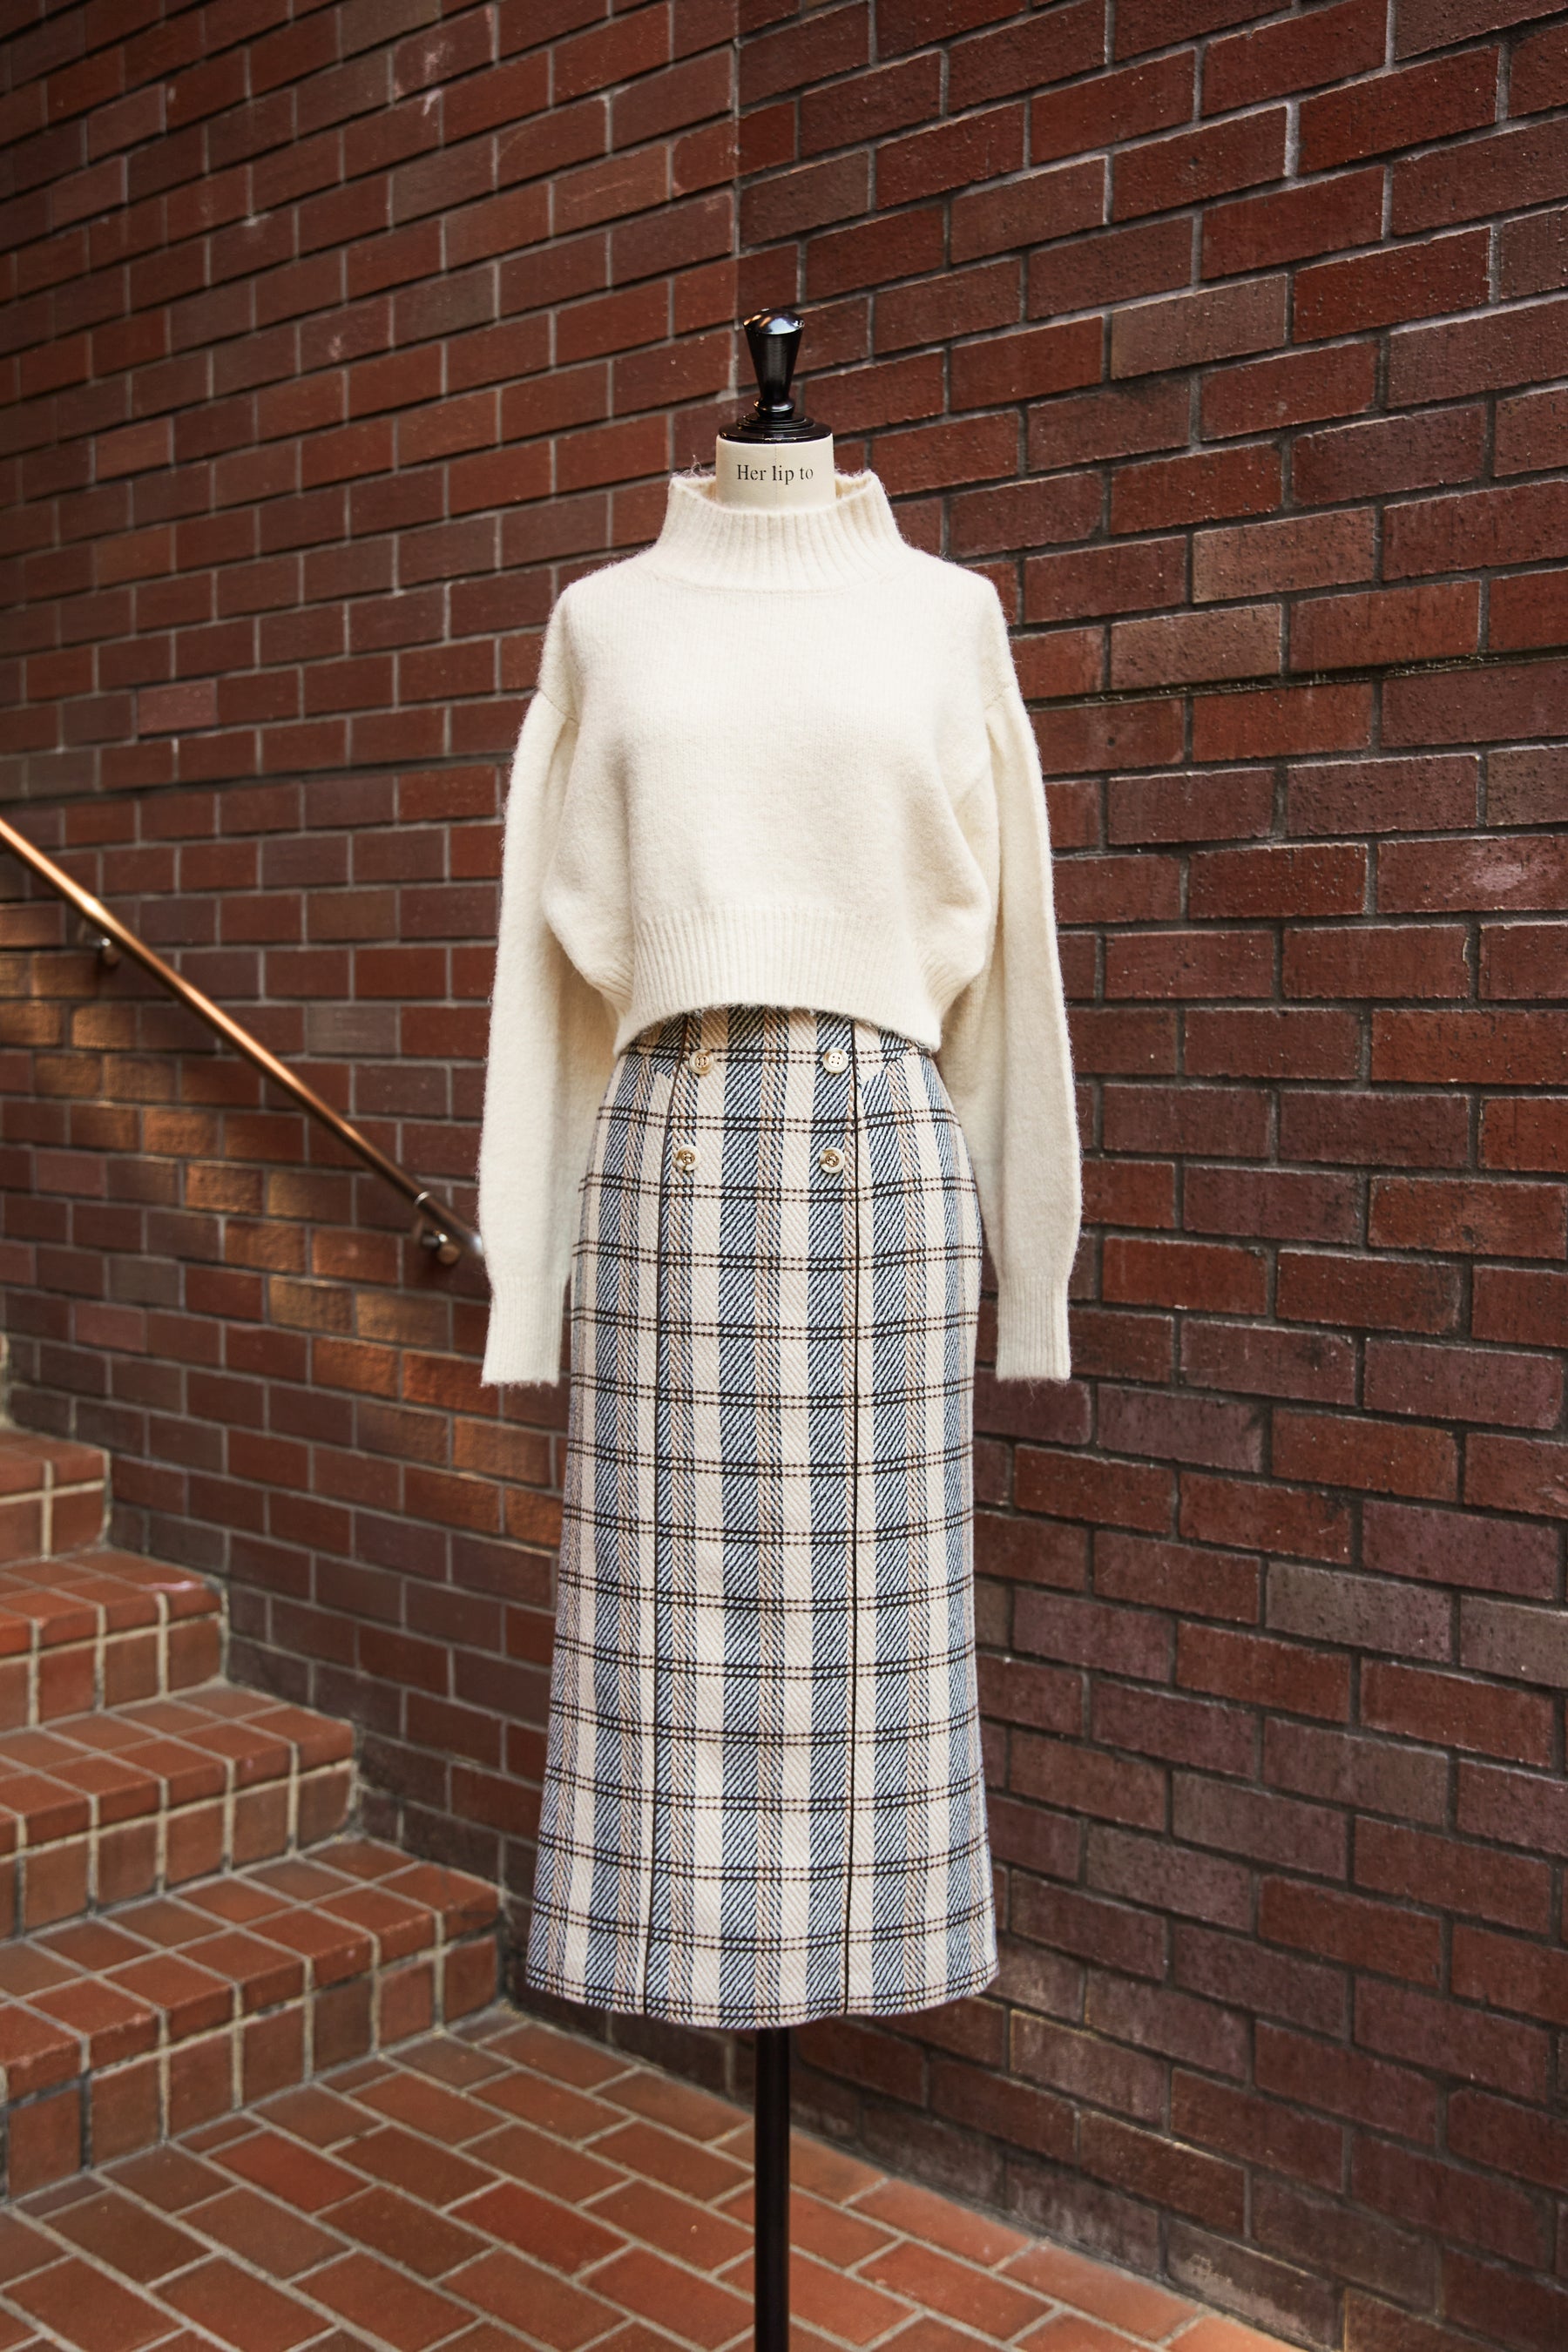 S総丈herlipto Over Check Wool-Blend Skirt